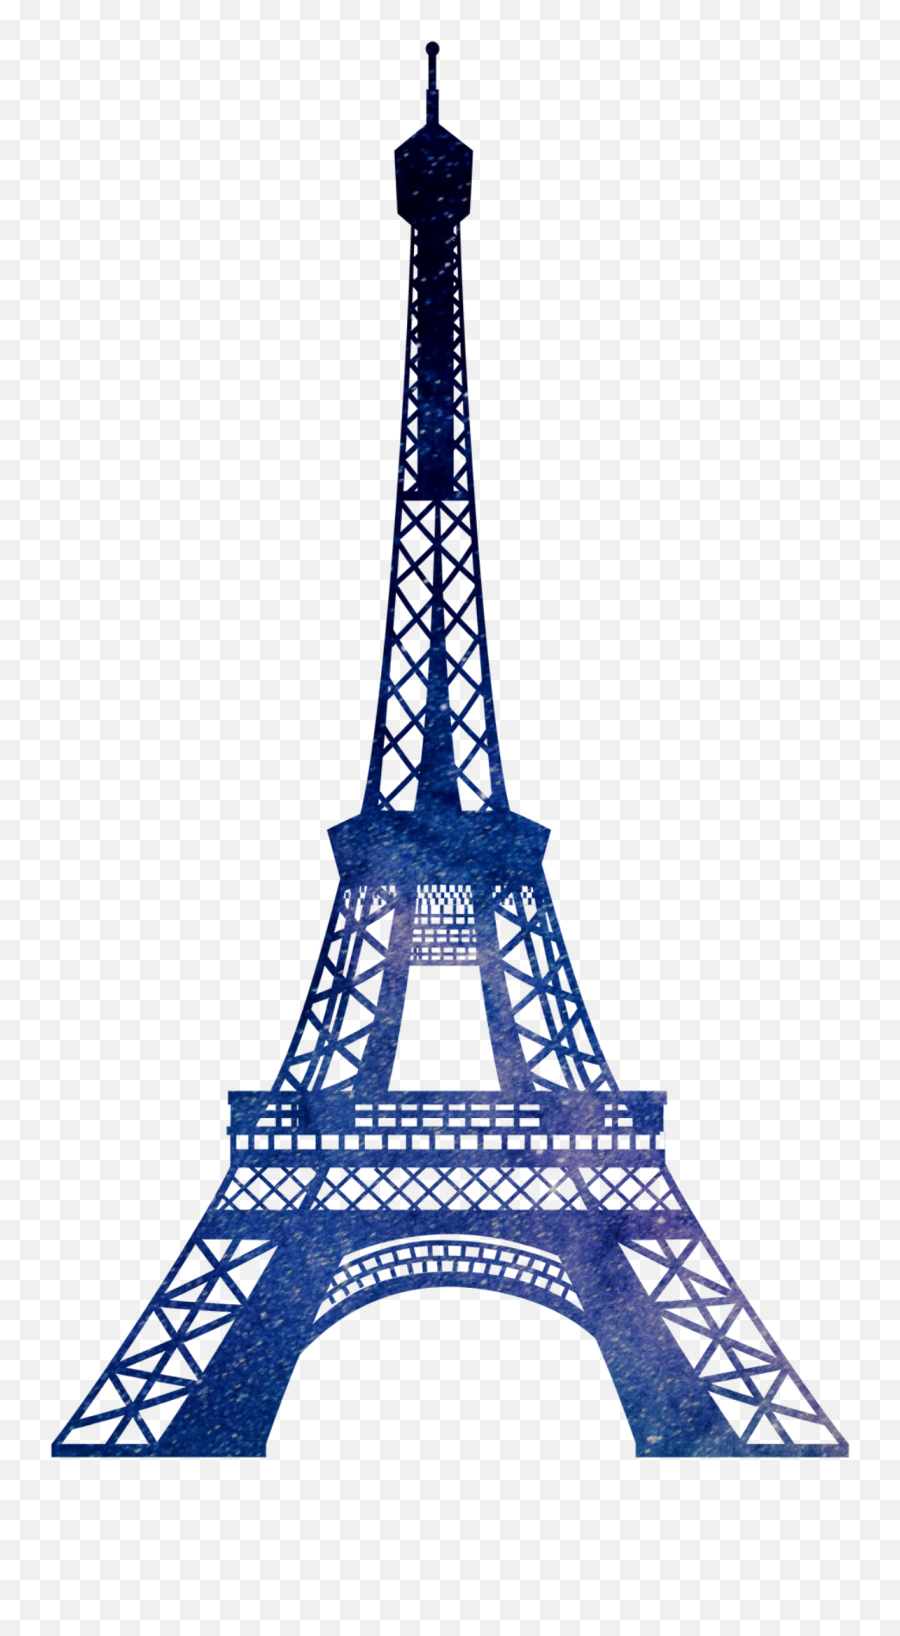 Popular And Trending France Eiffel Tower Stickers Picsart Emoji,Eiffel Tower Emoji